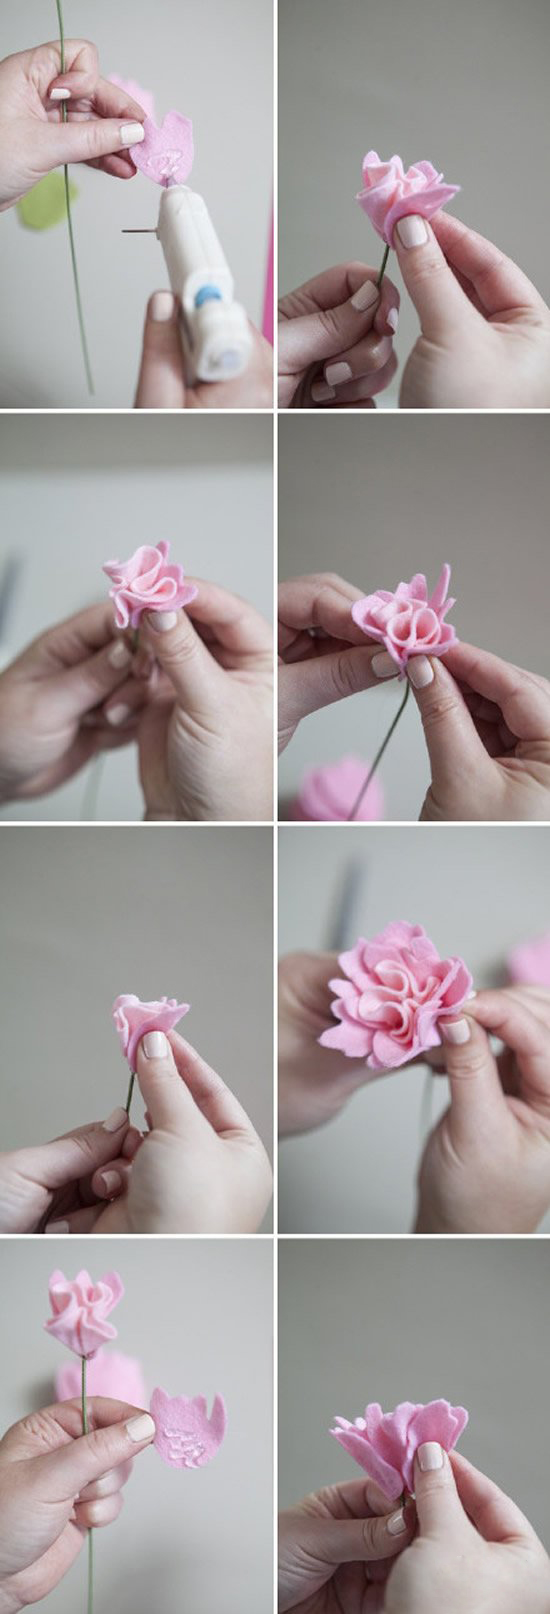 跟大家分享雍容华贵牡丹花的制作方法,不是折纸,而是布艺手工~看下面